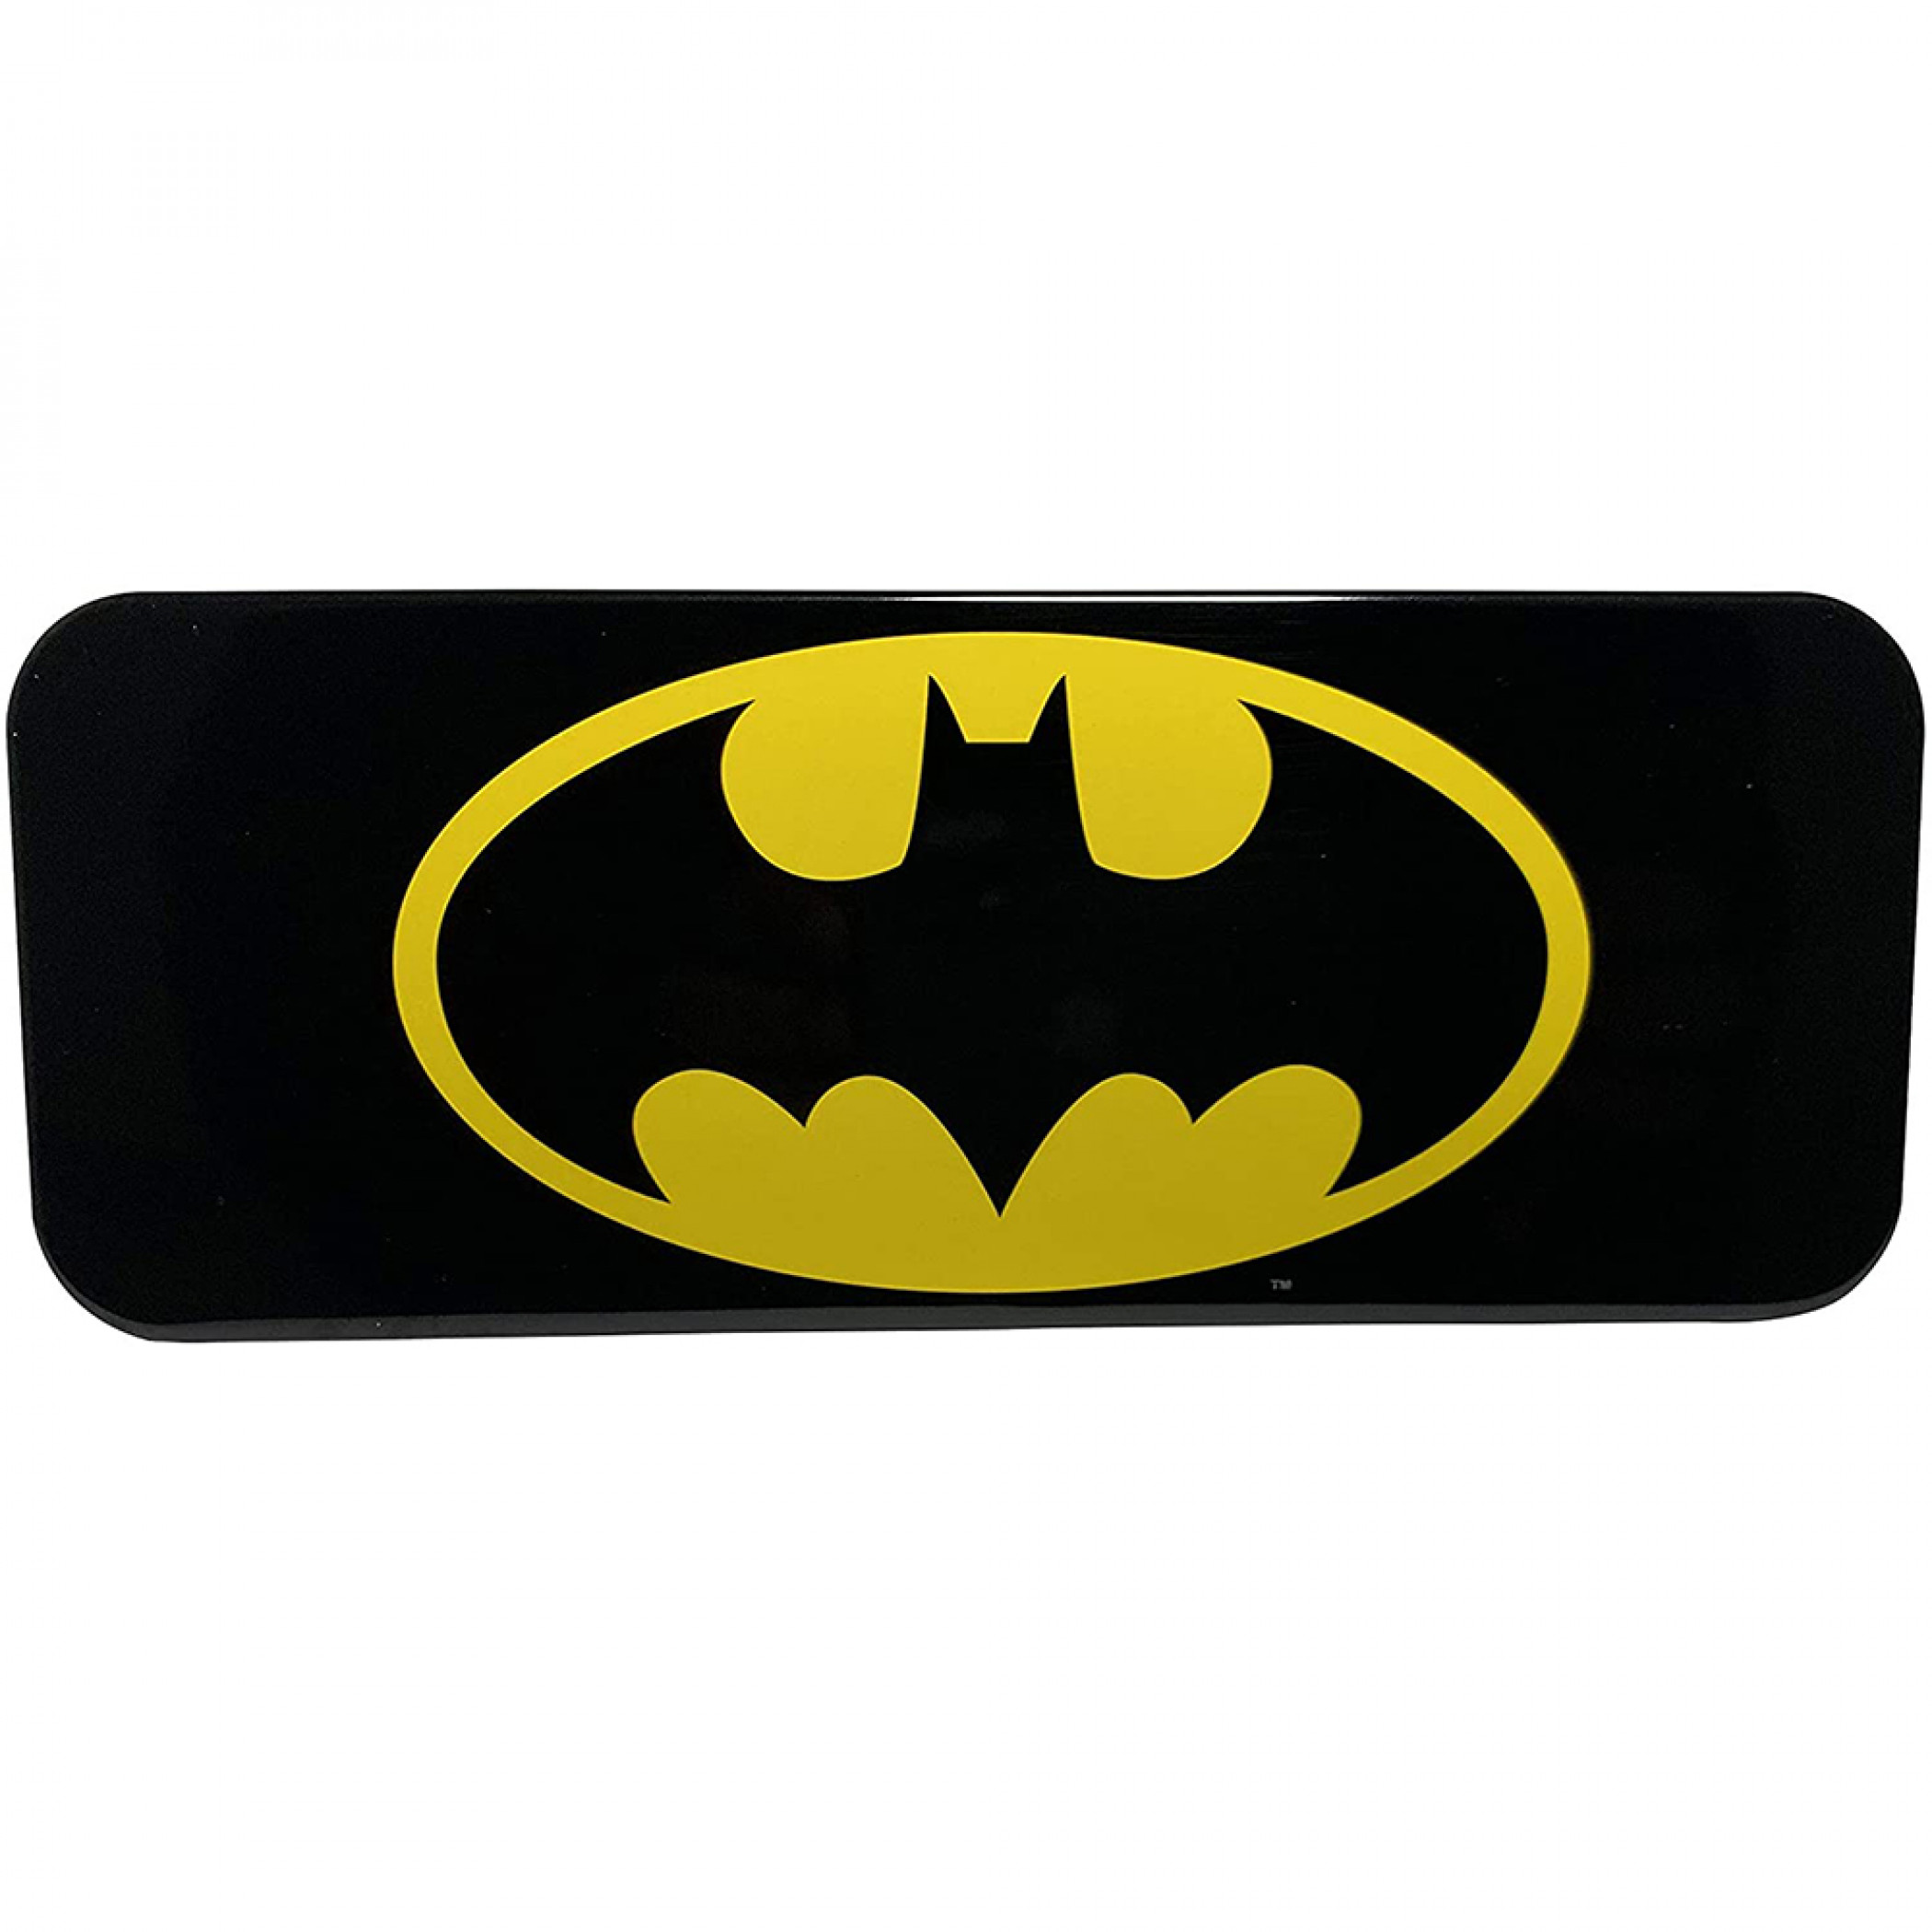 Batman DC Comics Bat Symbol Pencil Box